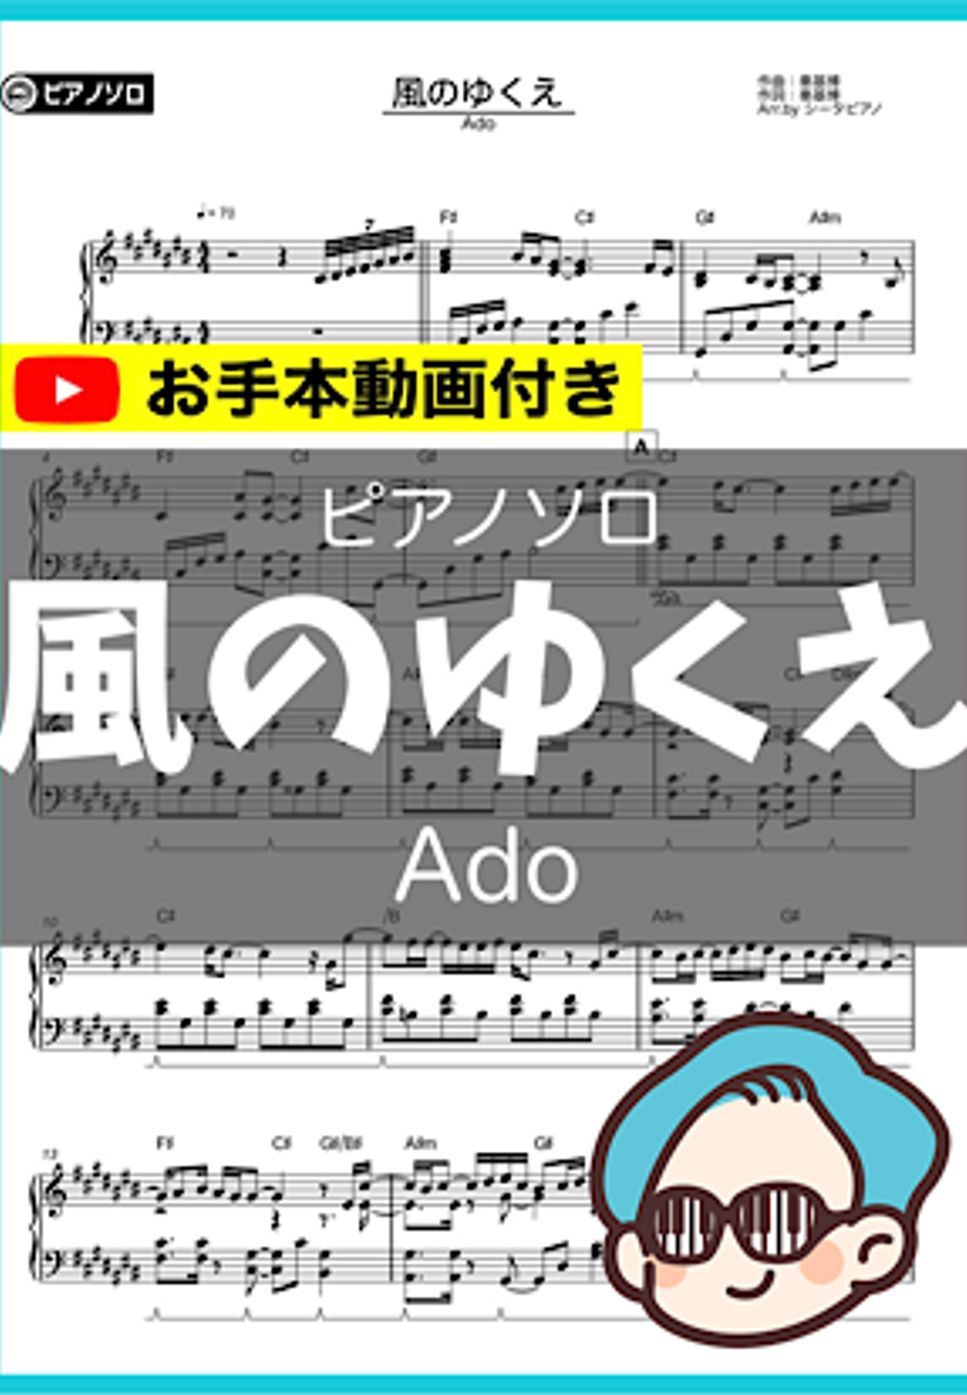 Ado - 風のゆくえ by シータピアノ